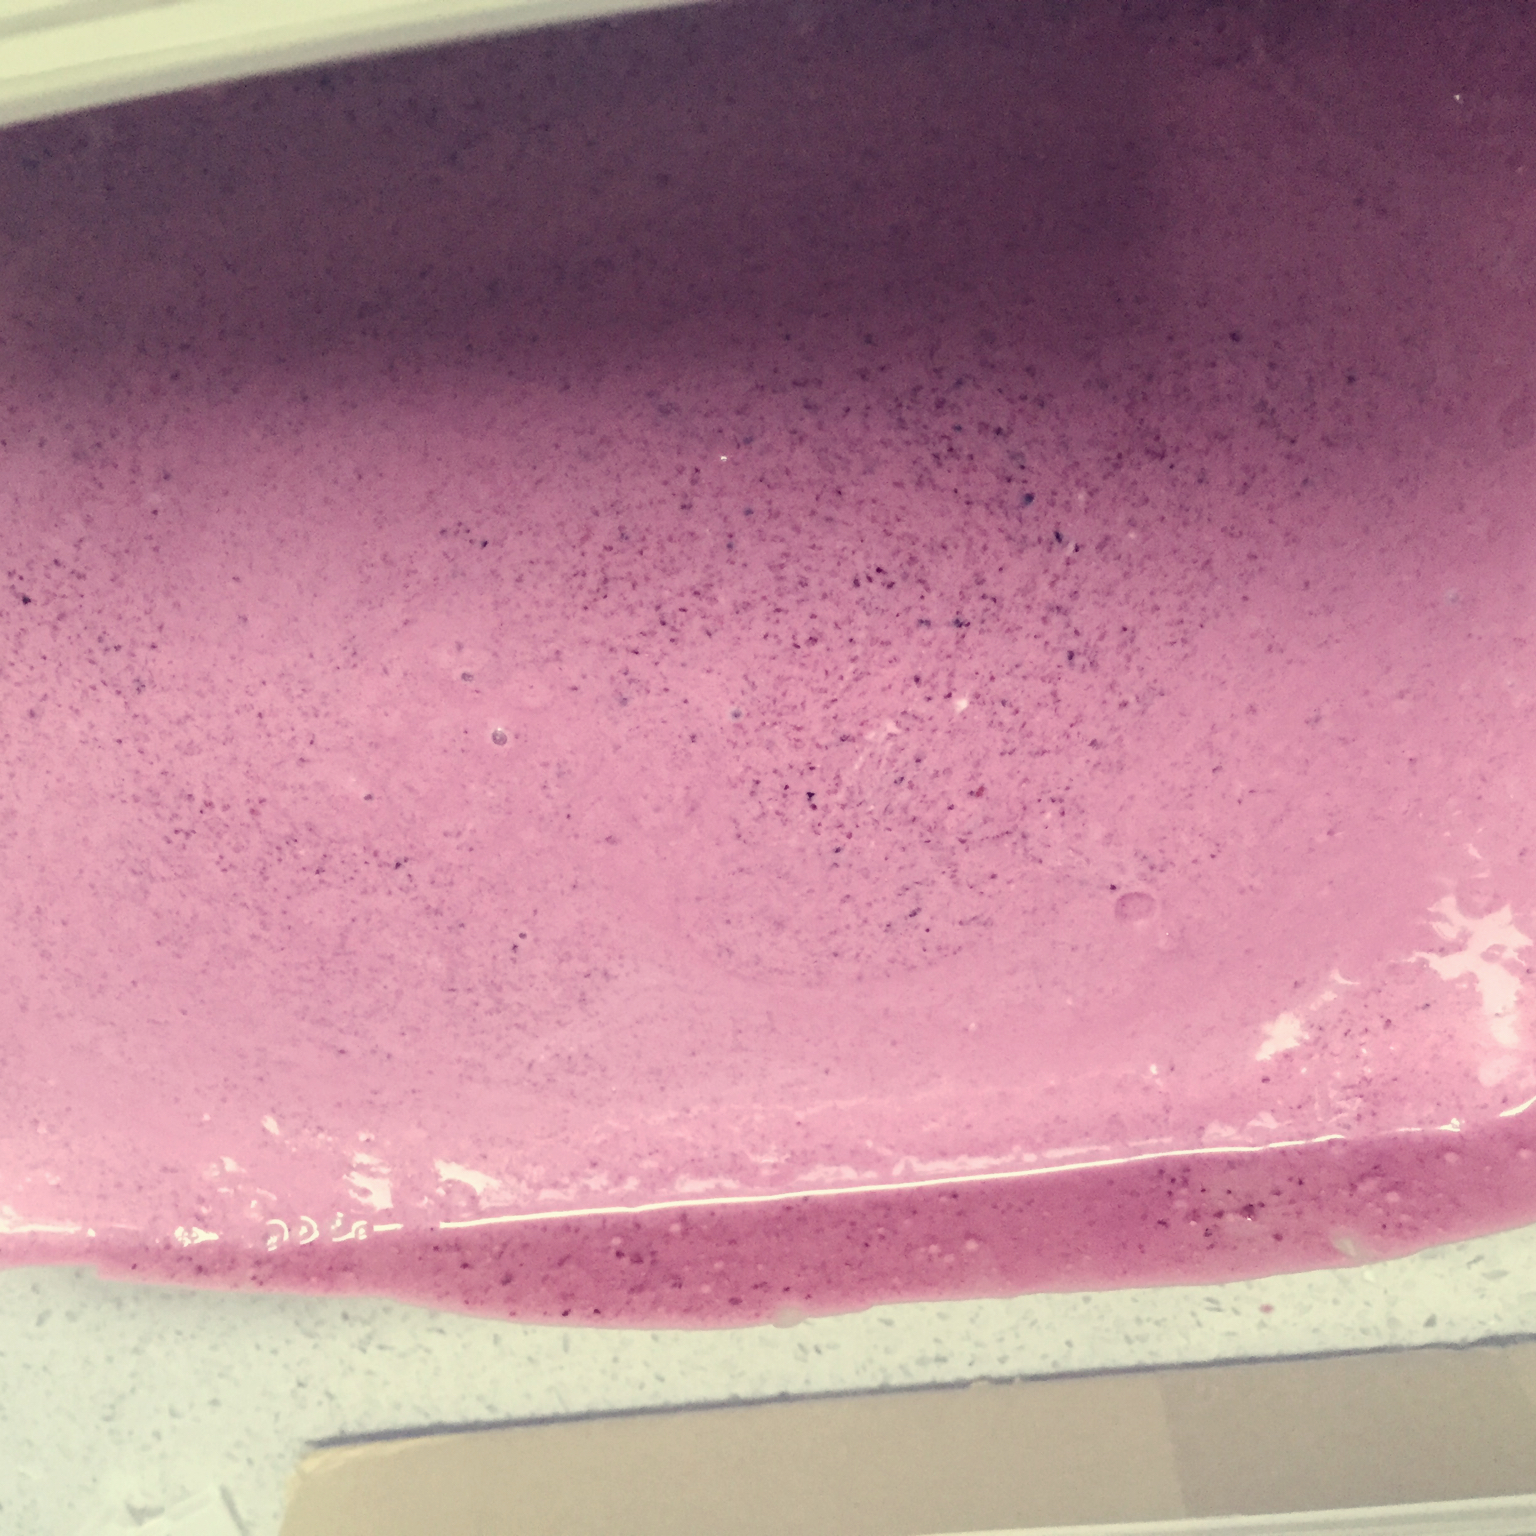 【蓝莓酸奶冰激淋】-酸酸甜甜